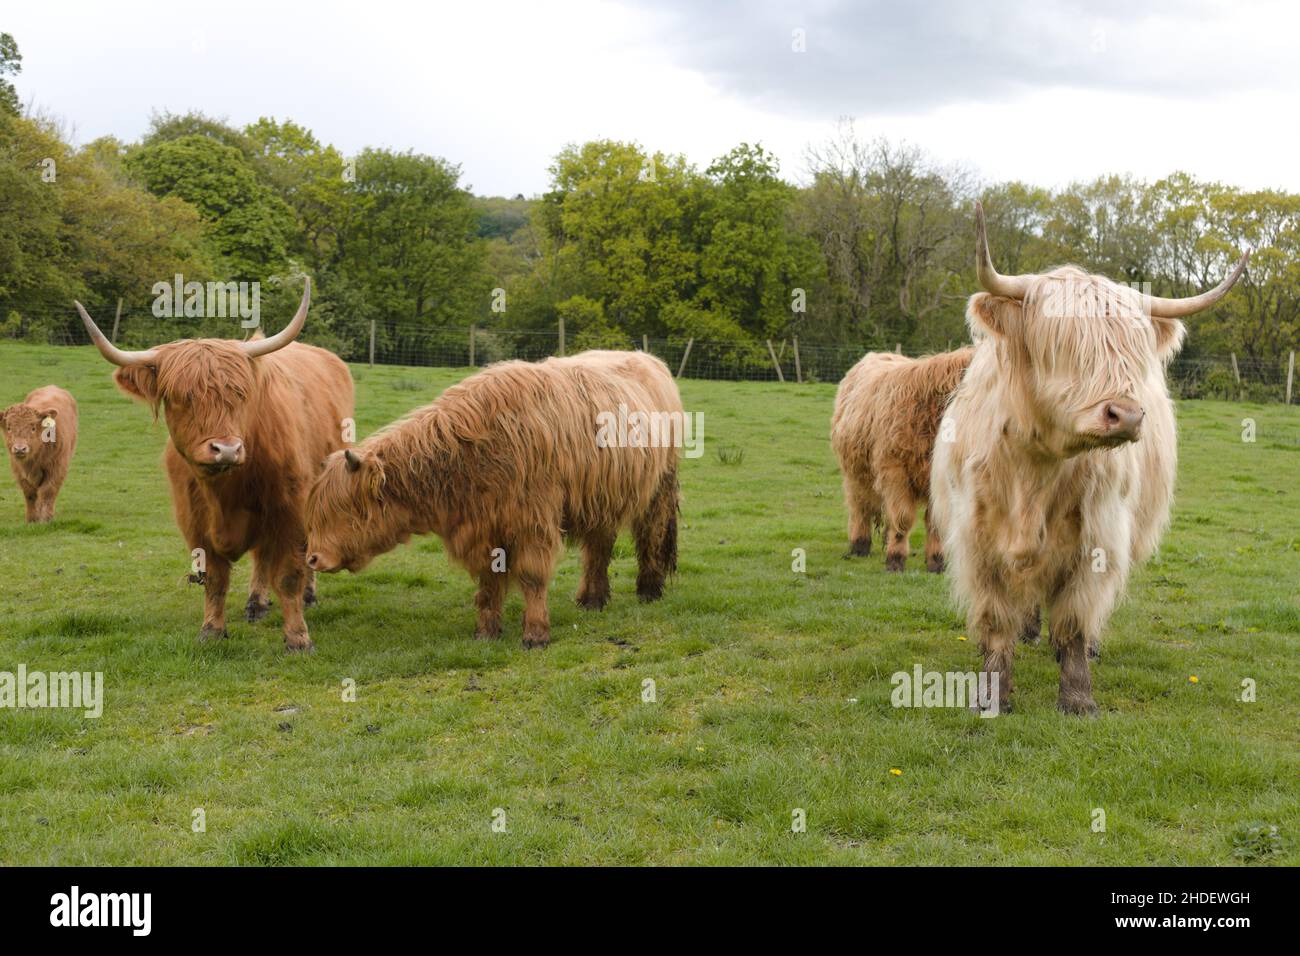 Cremefarbene langhaarige Langhornkühe auf einem Feld. Schottische Hochland Rinder seltene Rasse Stockfoto